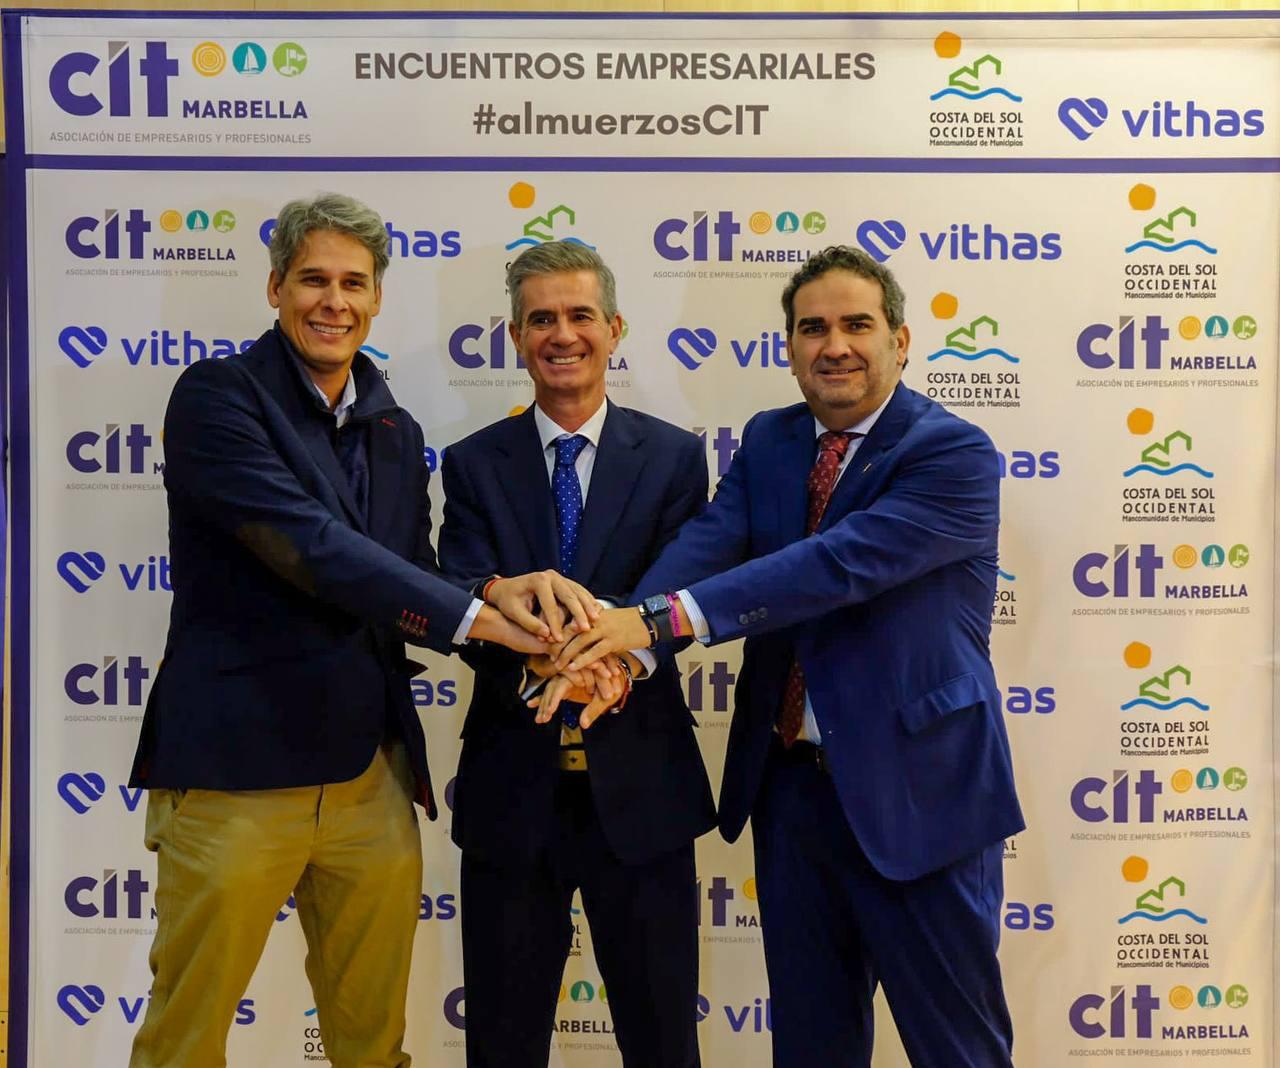 CIT  Marbella, Mancomunidad de Municipios de la Costa del Sol Occidental y Hospital Vithas Xanit Internacional han firmado un acuerdo de colaboración para los encuentros empresariales CIT en formato almuerzo